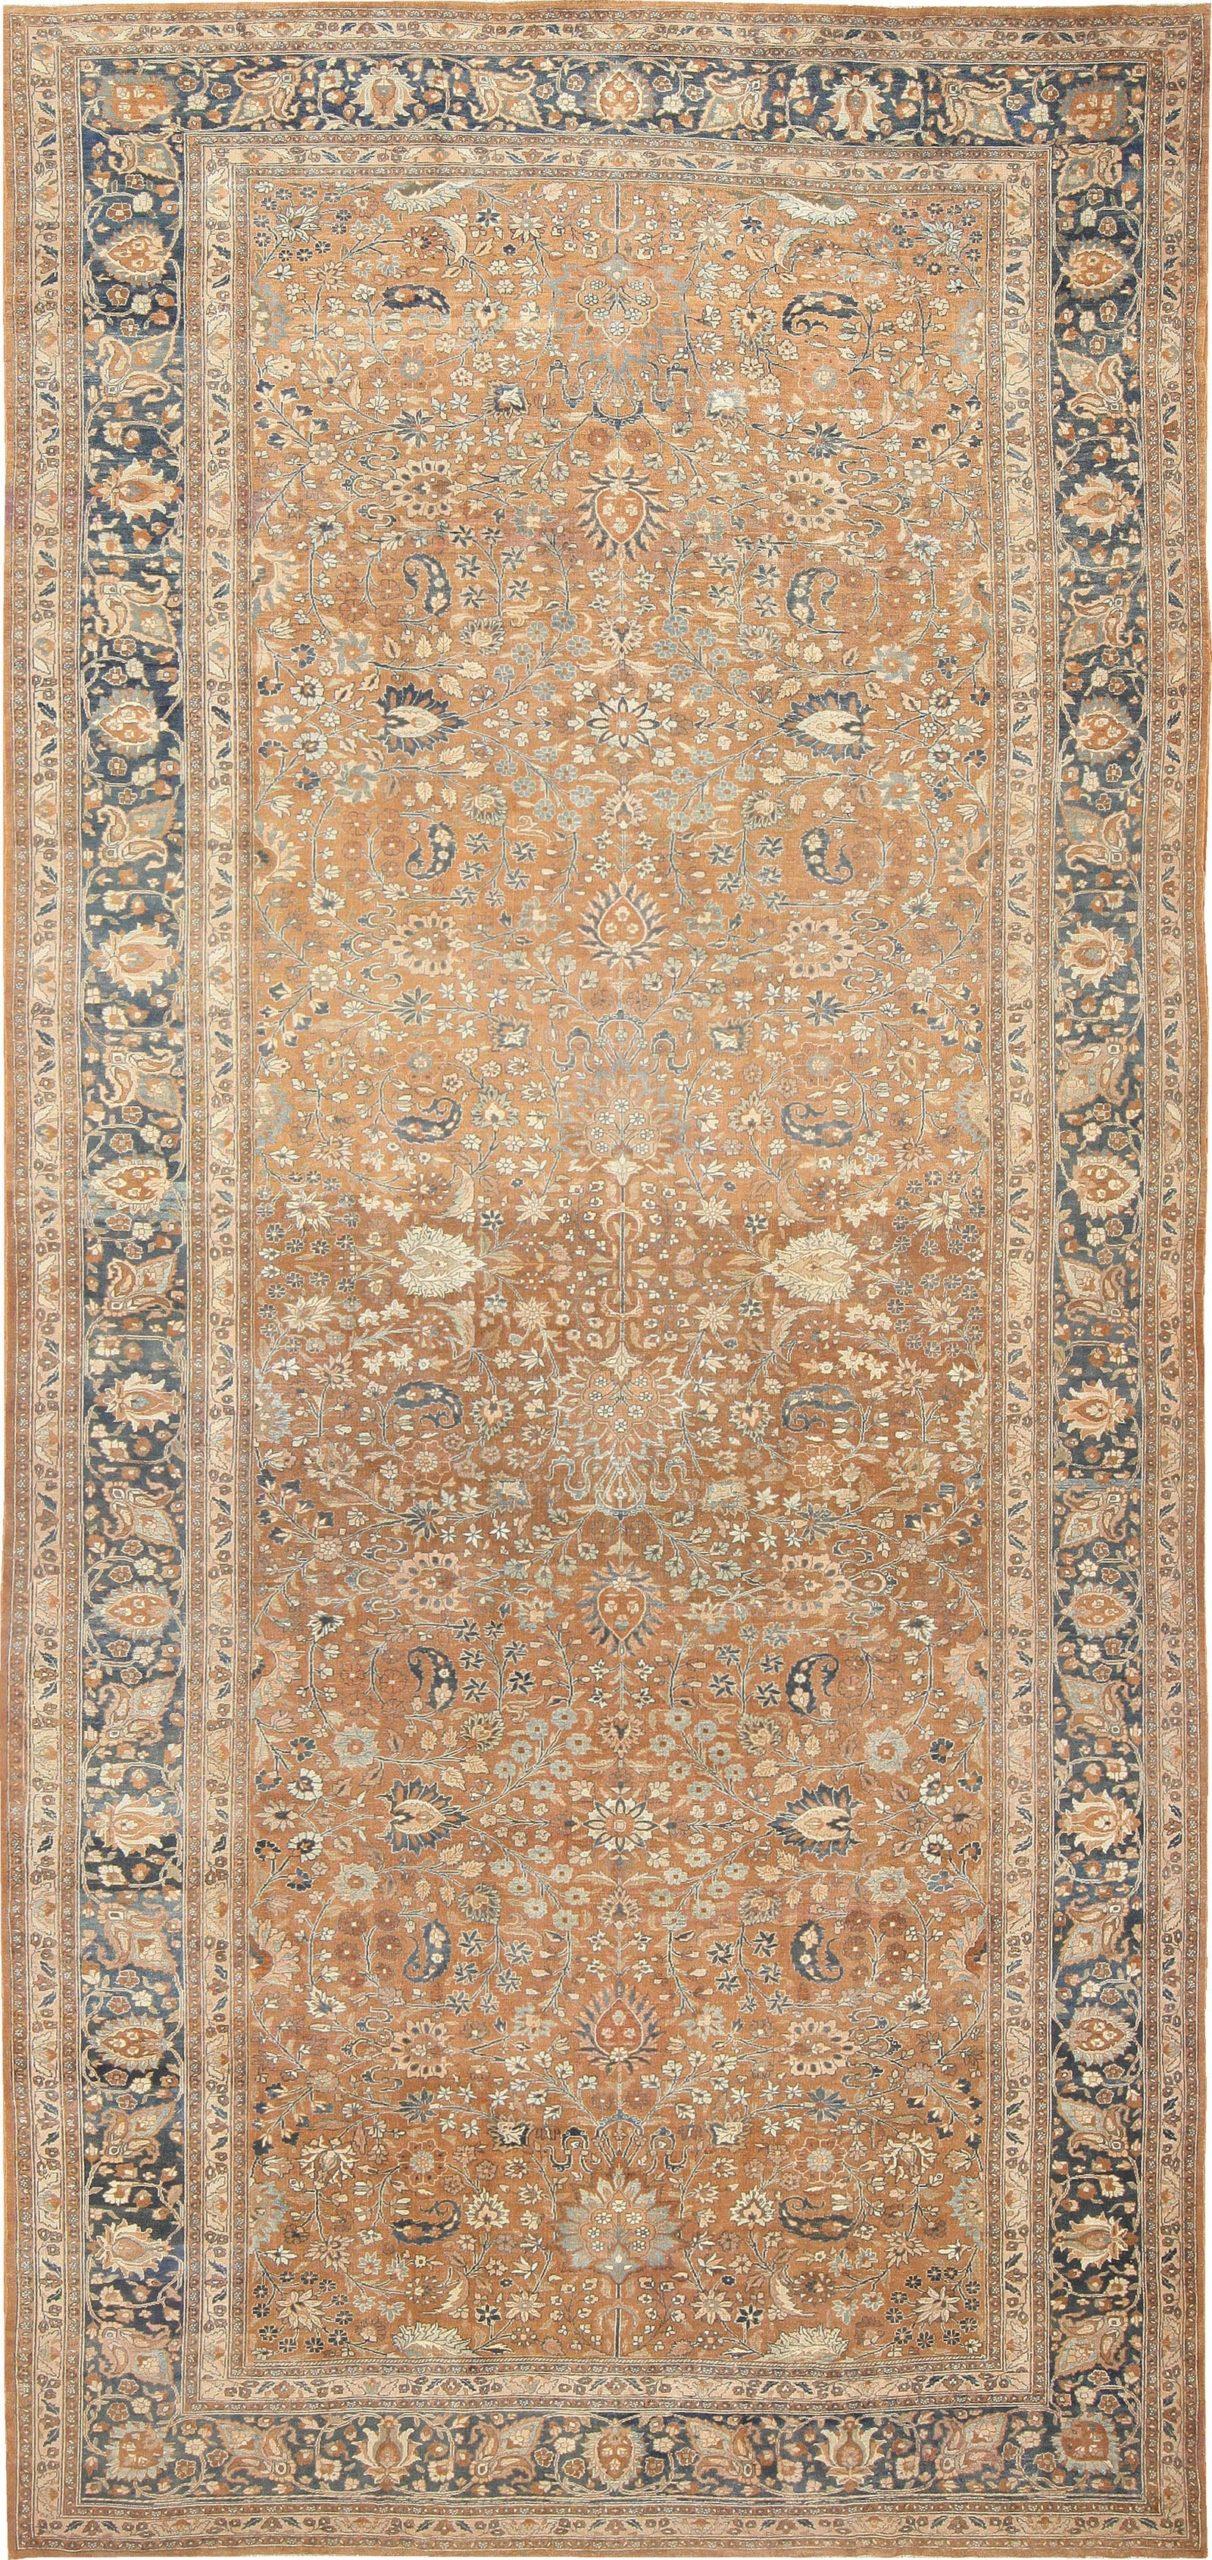 20th Century Antique Persian Khorassan Carpet. Size: 12 ft x 28 ft For Sale